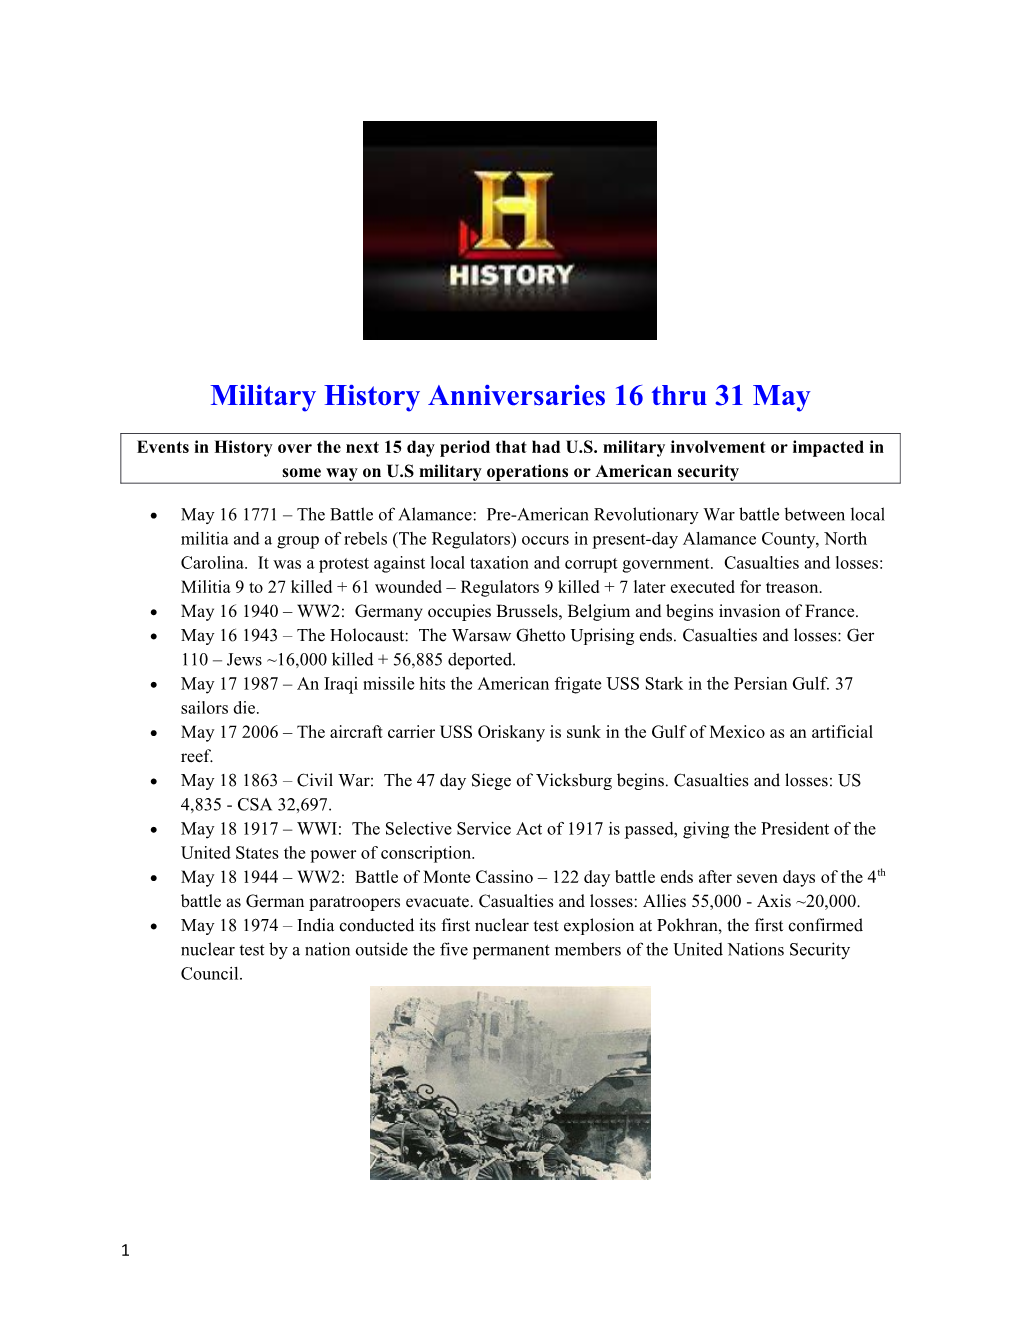 Military History Anniversaries16thru 31May